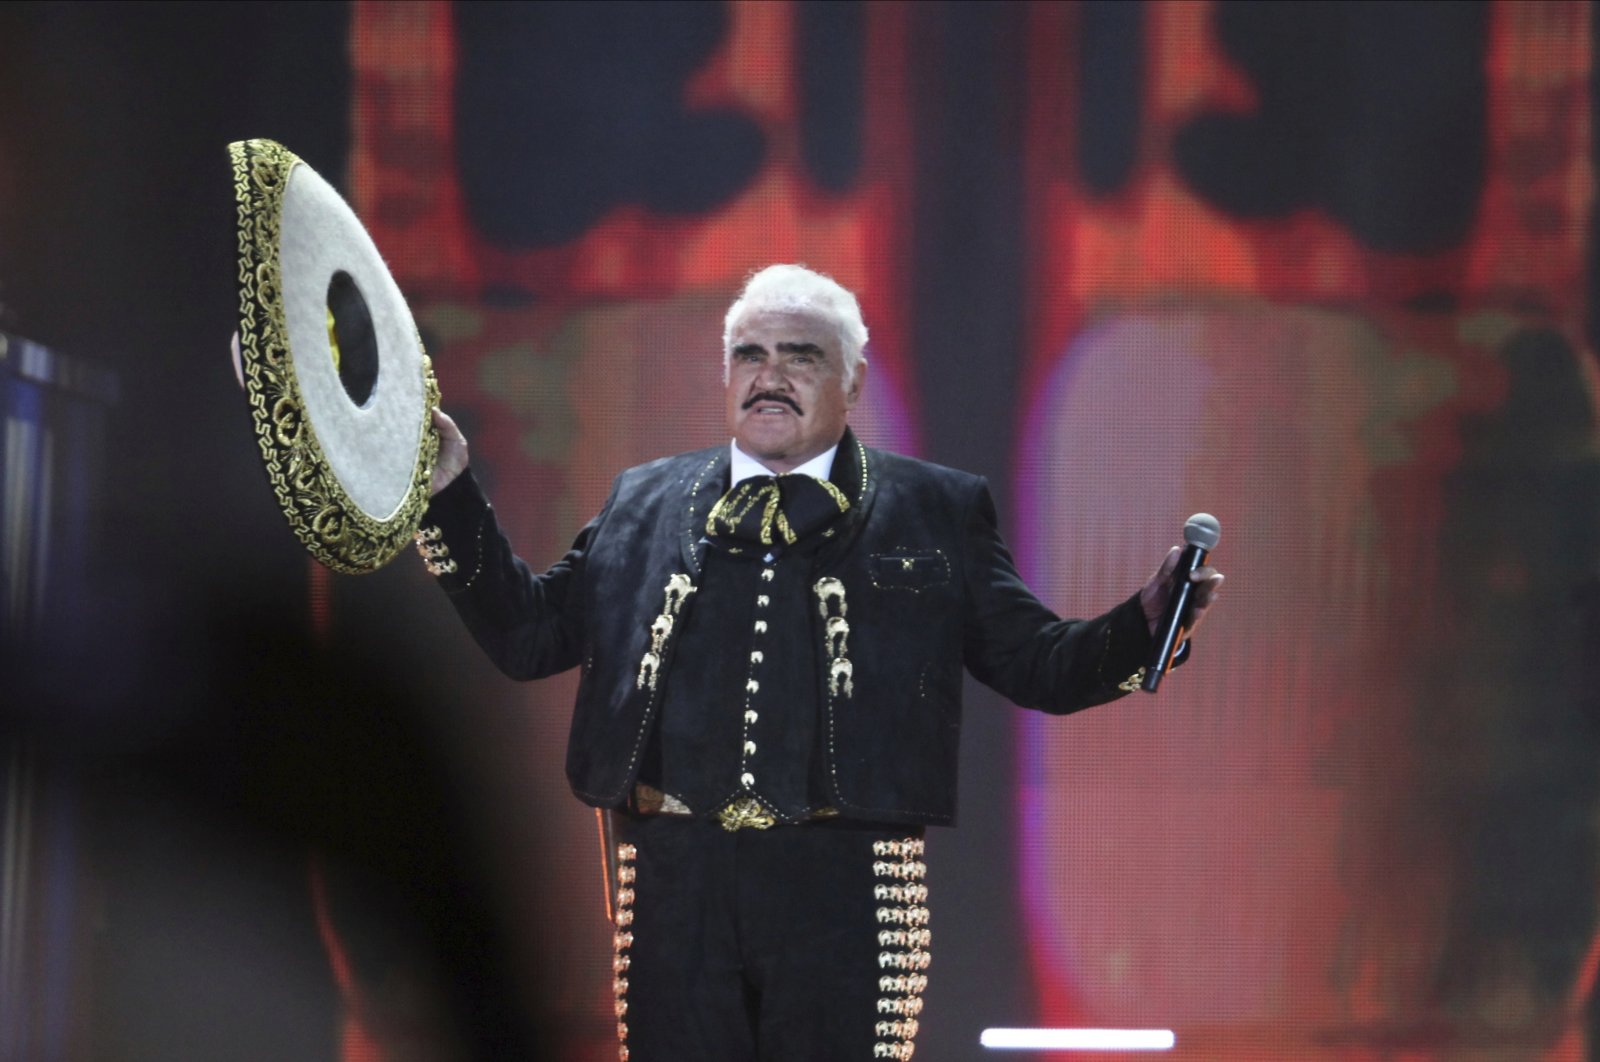 Vicente Fernandez, ‘idola Meksiko,’ meninggal pada usia 81 tahun